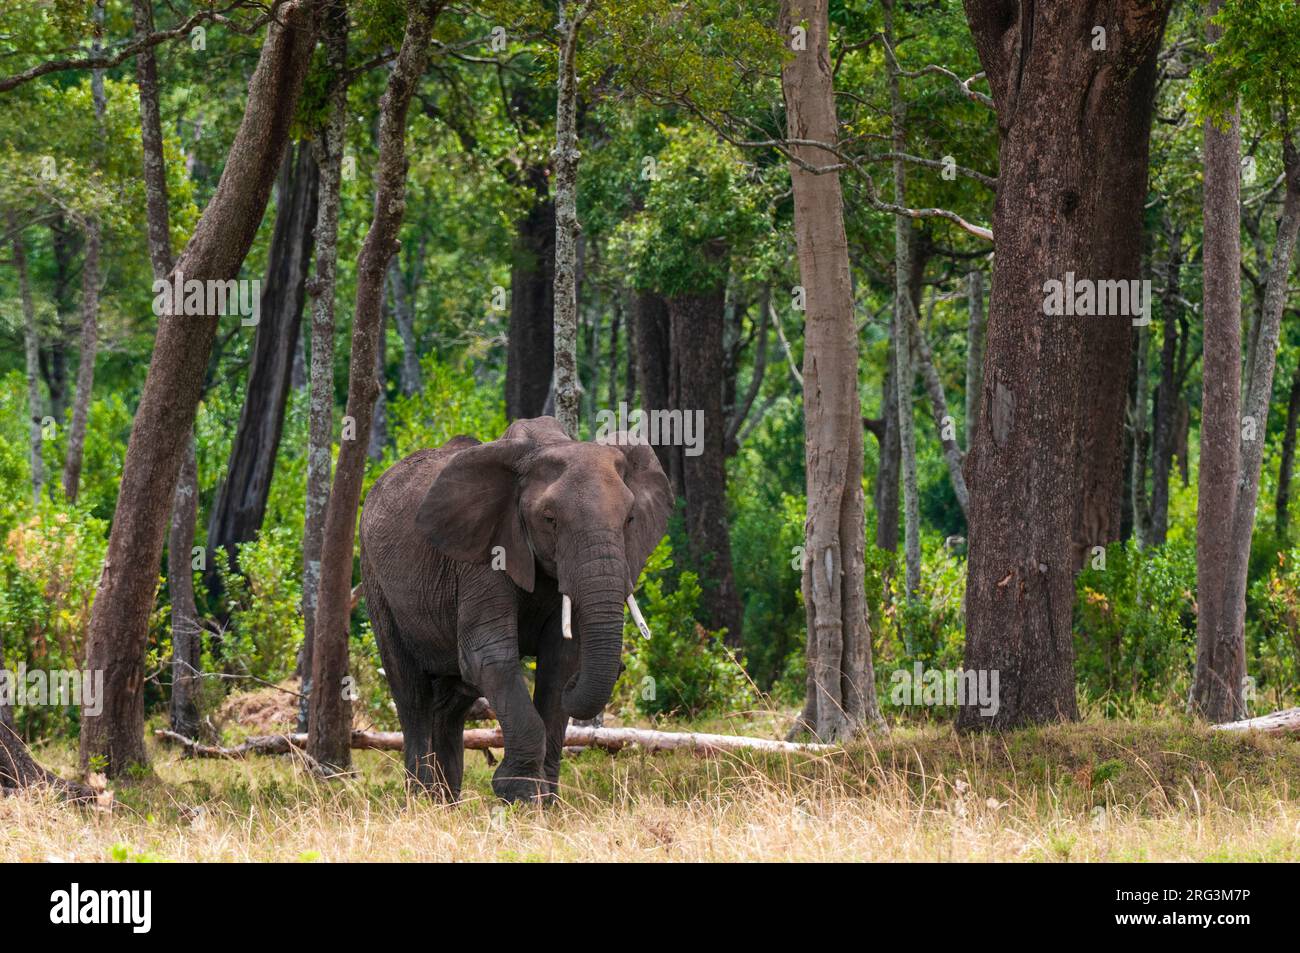 Un éléphant d'Afrique féminin, Loxodonta africana, dans un paysage boisé.Réserve nationale de Masai Mara, Kenya. Banque D'Images